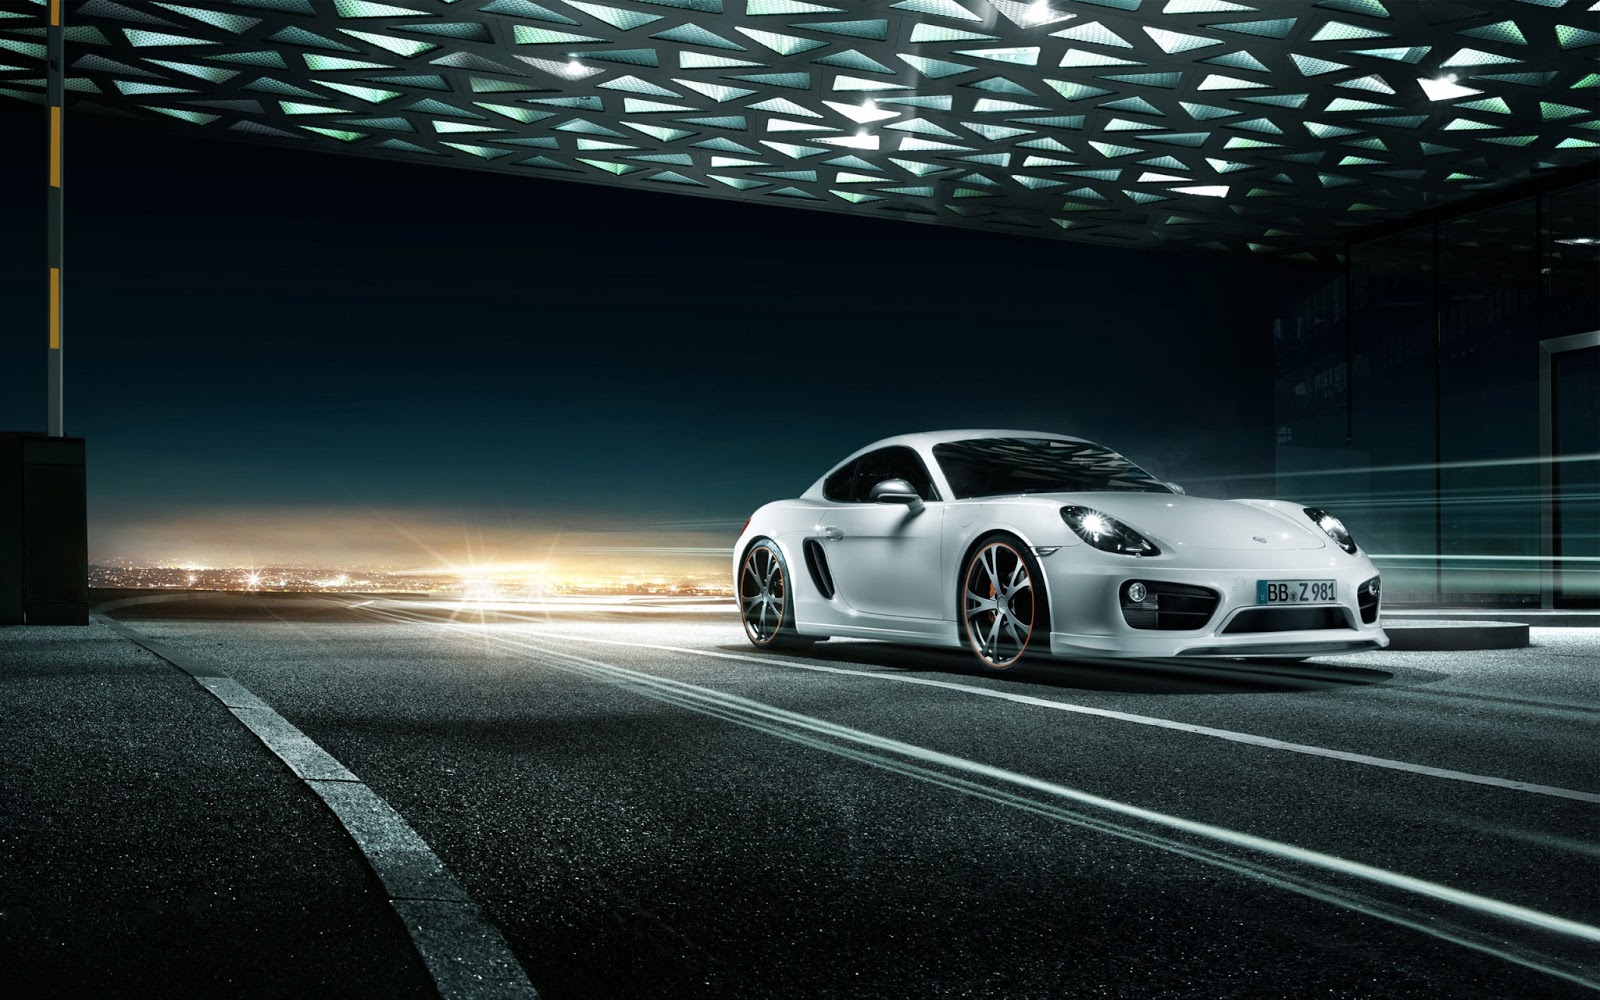 2013 TechArt Porsche Cayman